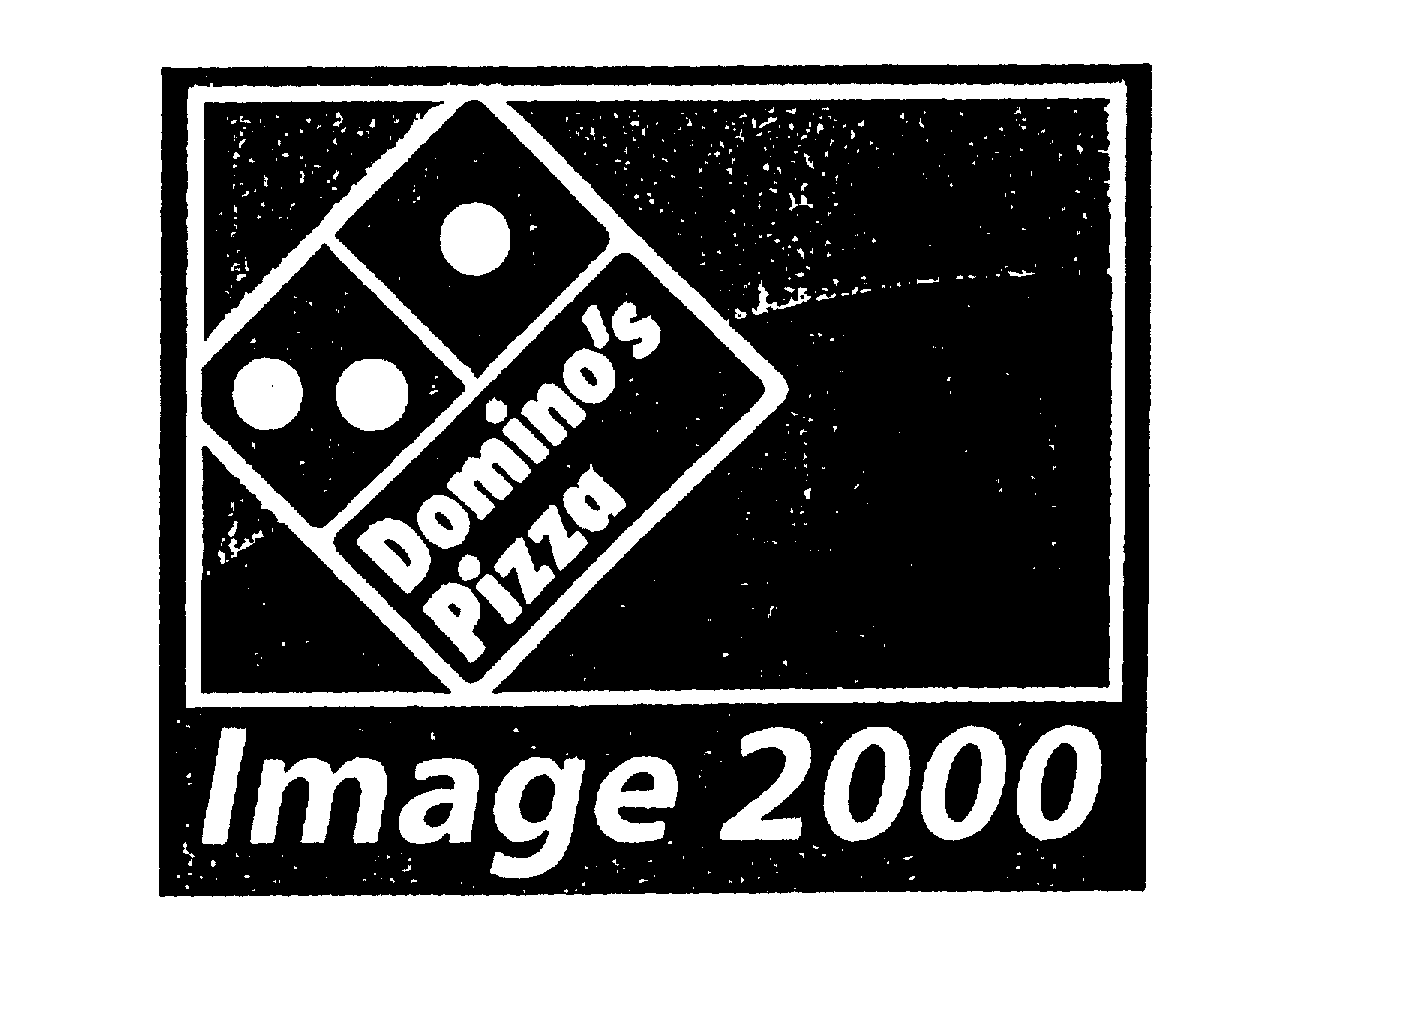  DOMINO'S PIZZA IMAGE 2000